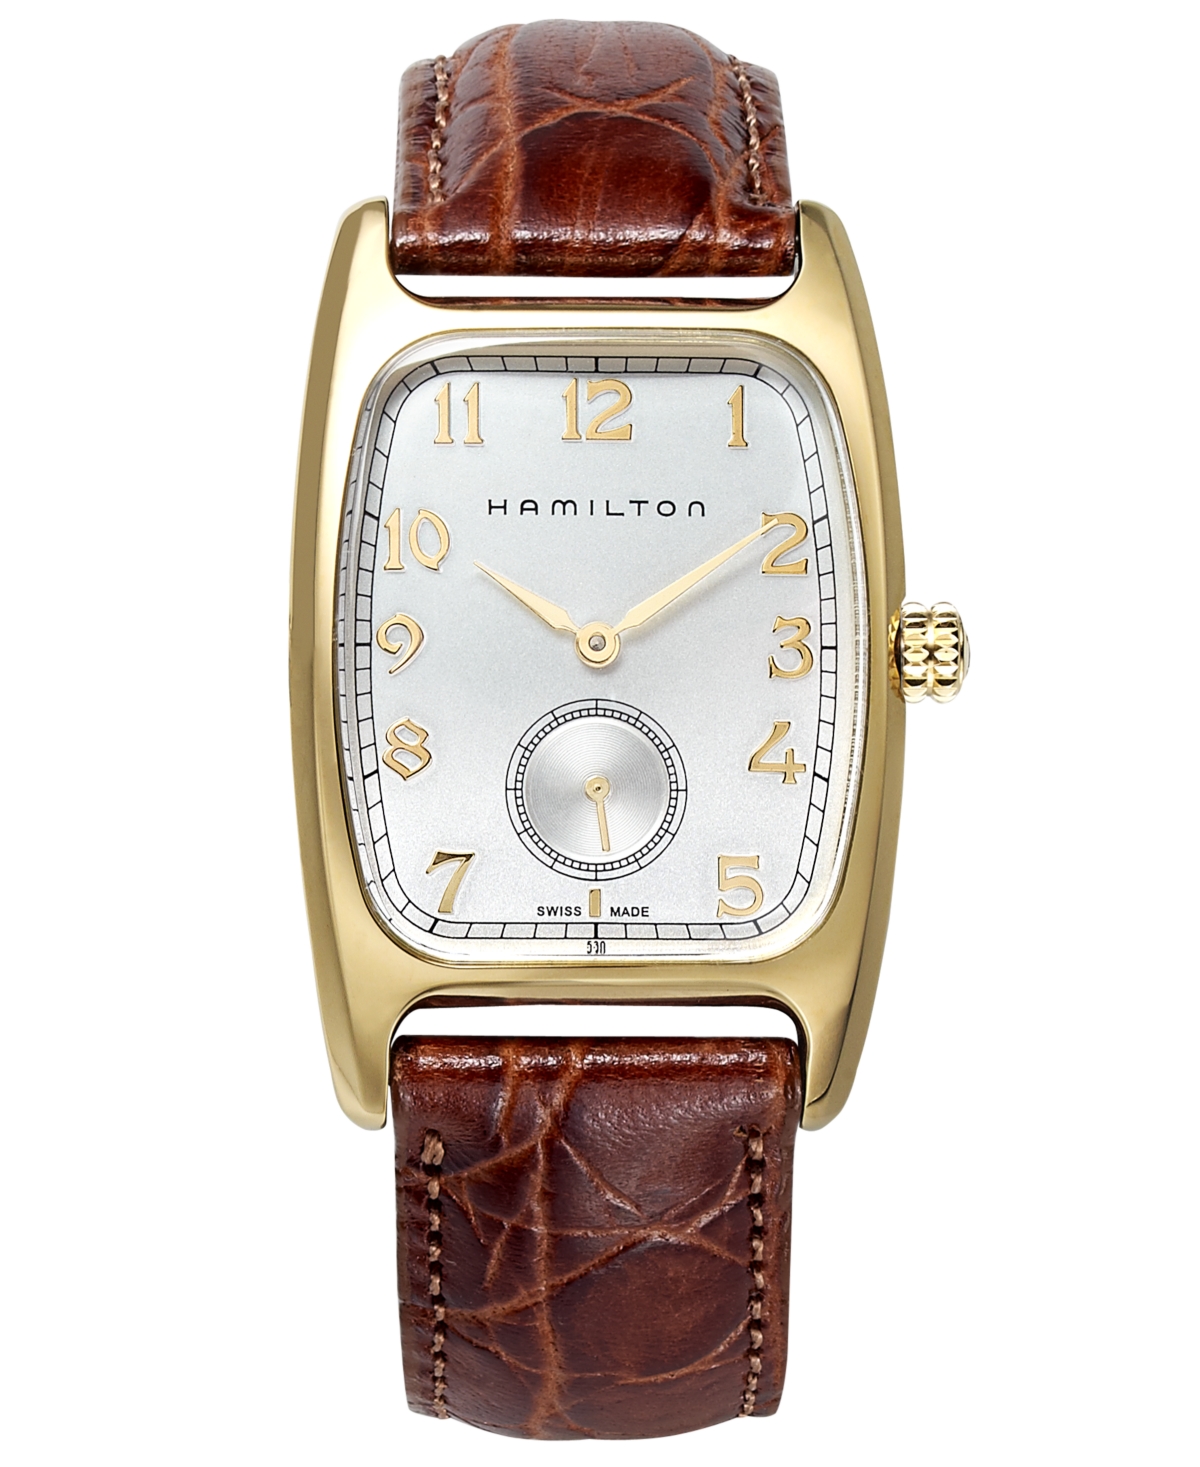 Hamilton Men's Swiss Boulton Brown Leather Strap Watch 27mm H13431553